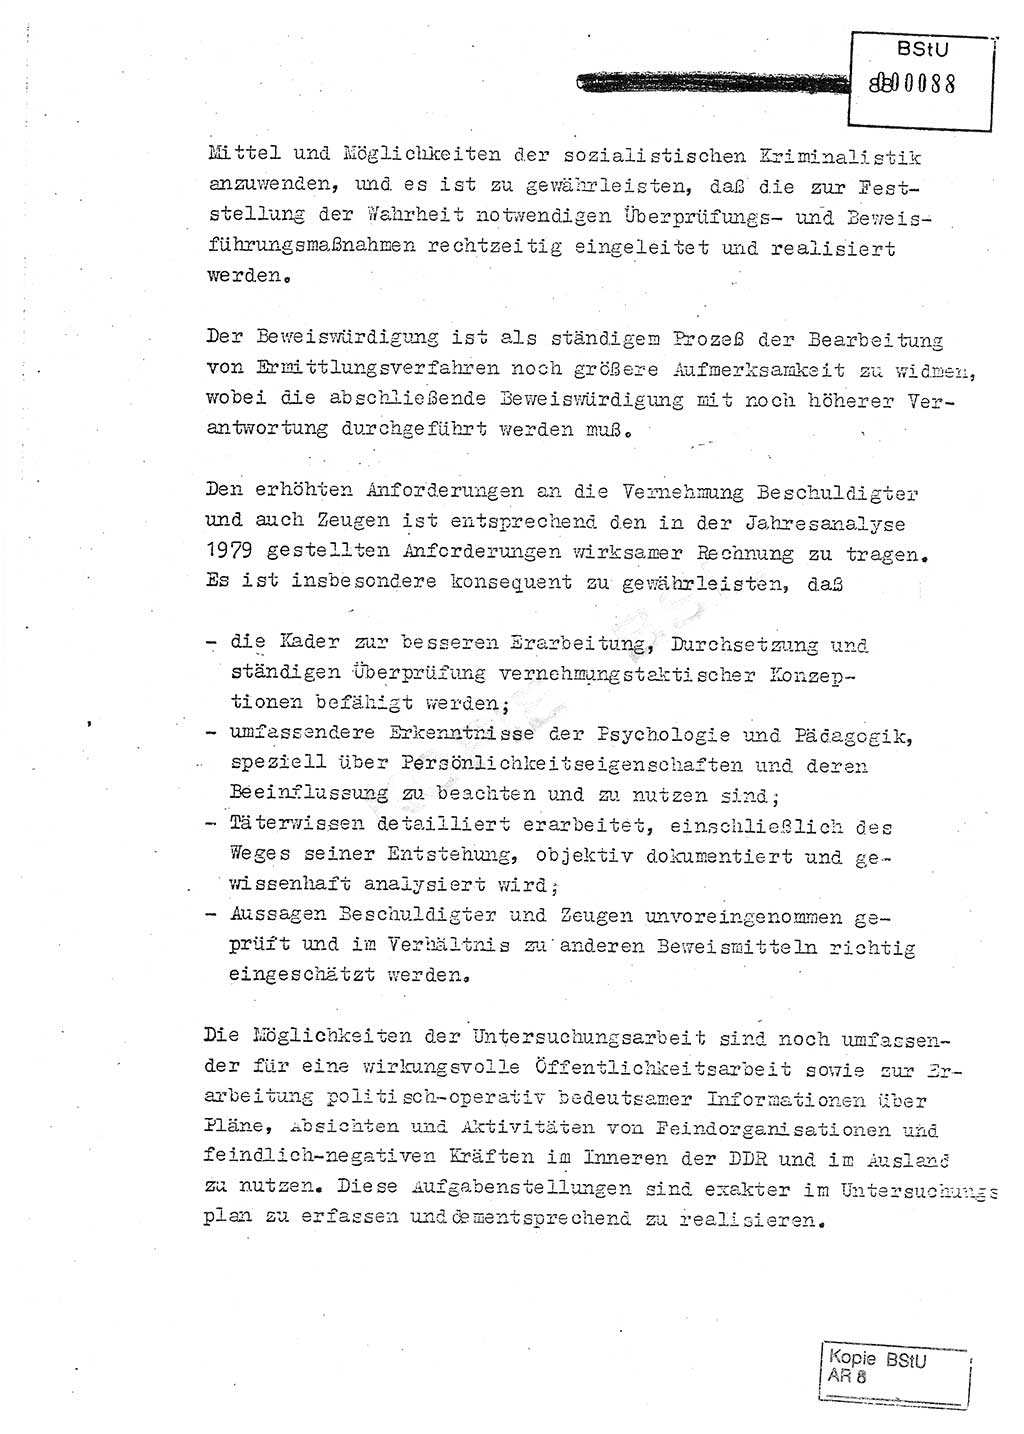 Jahresbericht der Hauptabteilung (HA) Ⅸ 1980, Analyse über die Entwicklung und die Wirksamkeit der politisch-operativen Arbeit der Linie Ⅸ in der Zeit vom 1. Januar 1980 bis 30. September 1980, Ministerium für Staatssicherheit (MfS) der Deutschen Demokratischen Republik (DDR), Hauptabteilung Ⅸ, Geheime Verschlußsache (GVS) 014-660/80, Berlin 1980, Seite 88 (Anal. MfS DDR HA Ⅸ GVS 014-660/80 1980, S. 88)